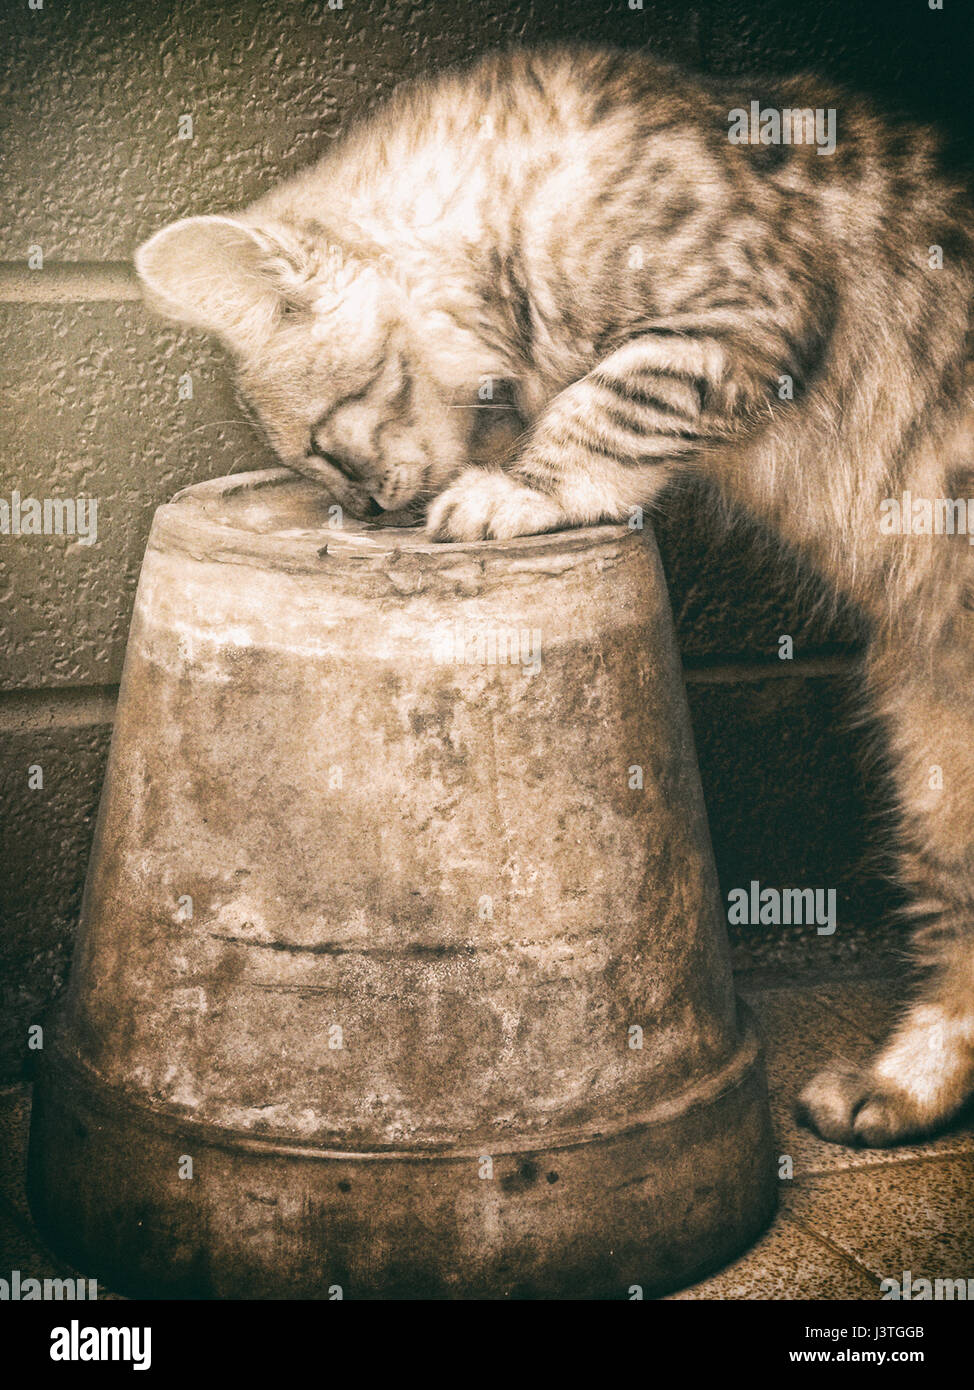 Cat curiosity Stock Photo